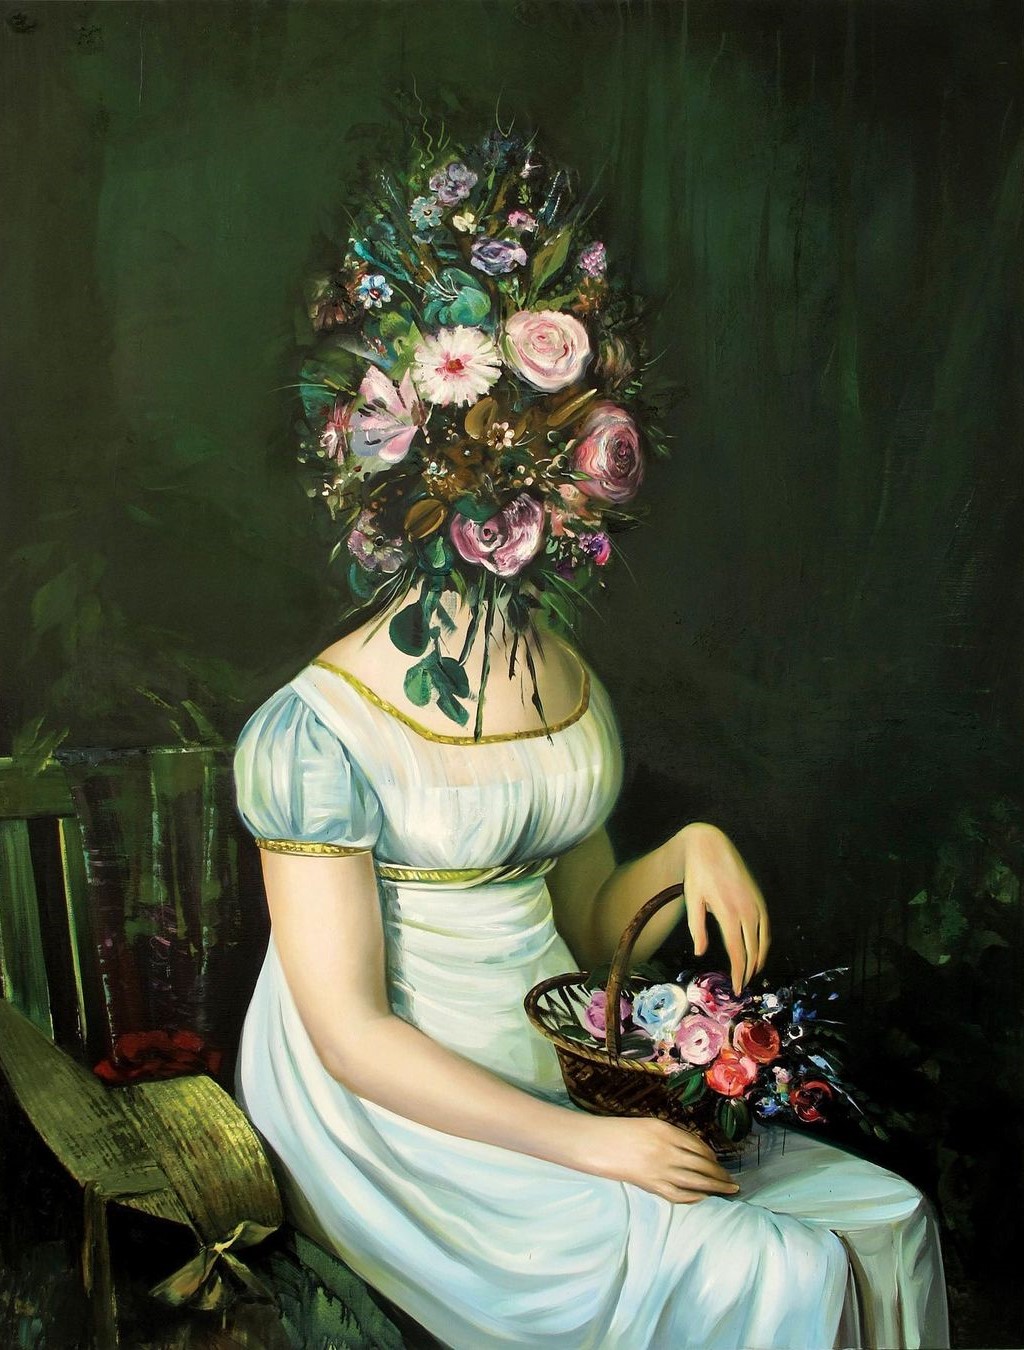 Surrealistic Reinterpretation Of The Classical Portrait Style By Ewa Juszkiewicz (16)